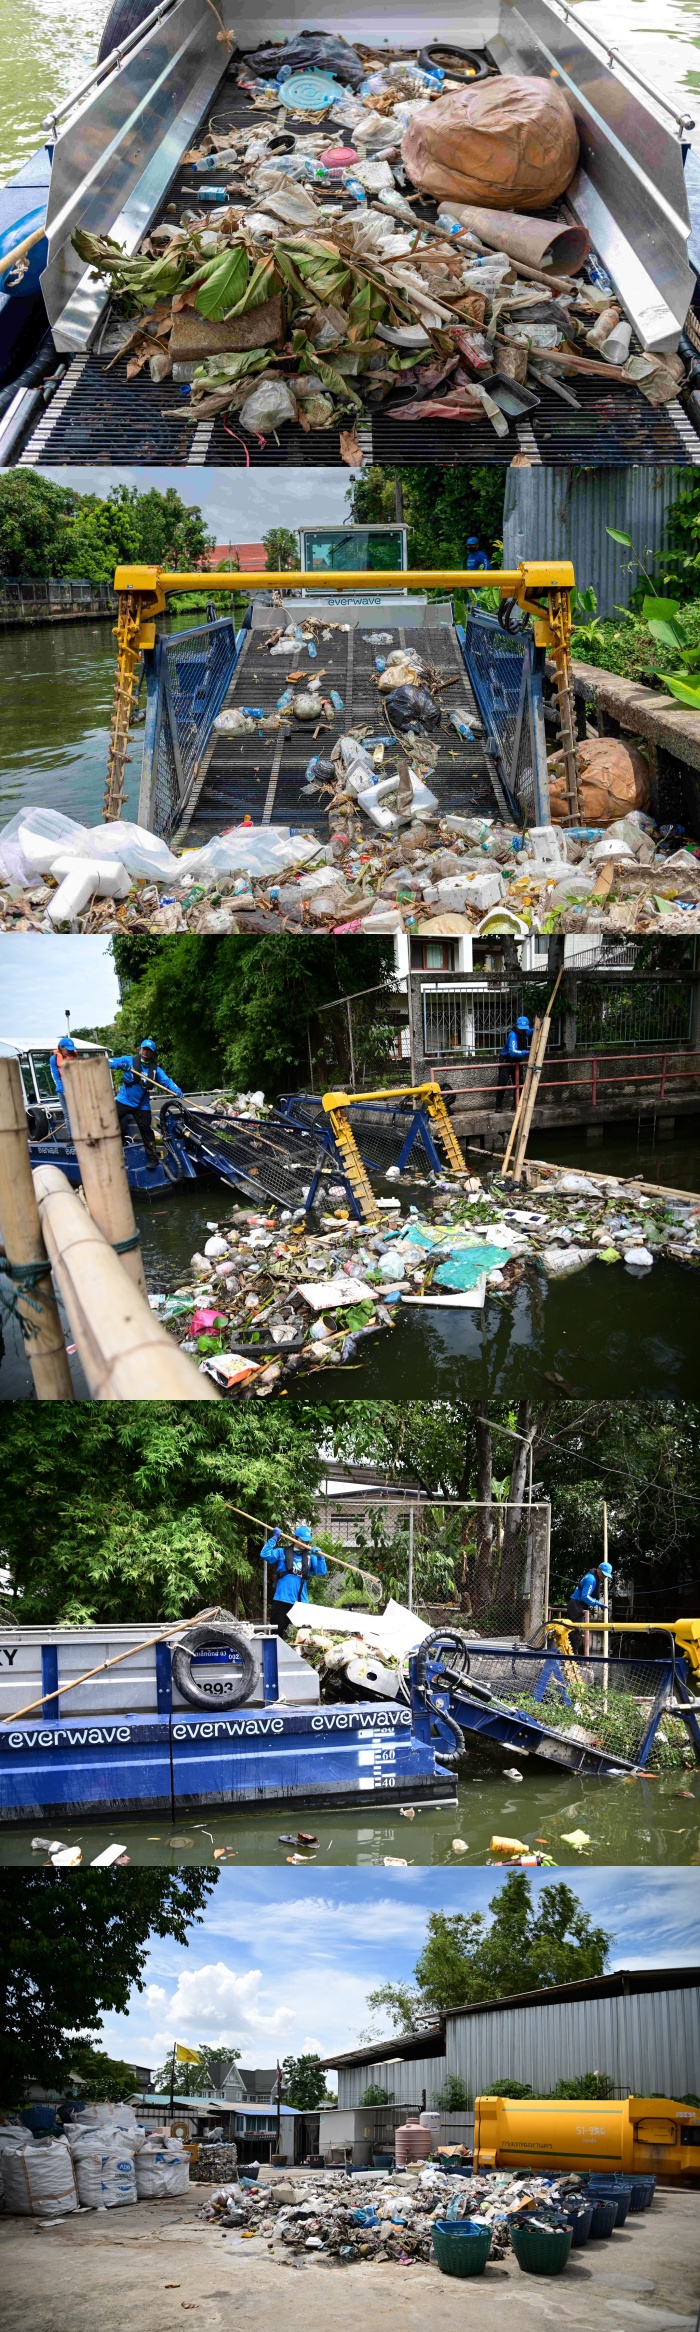 อาวดี้ ประเทศไทย ทำ CSR  จัดการขยะแม่น้ำเจ้าพระยา